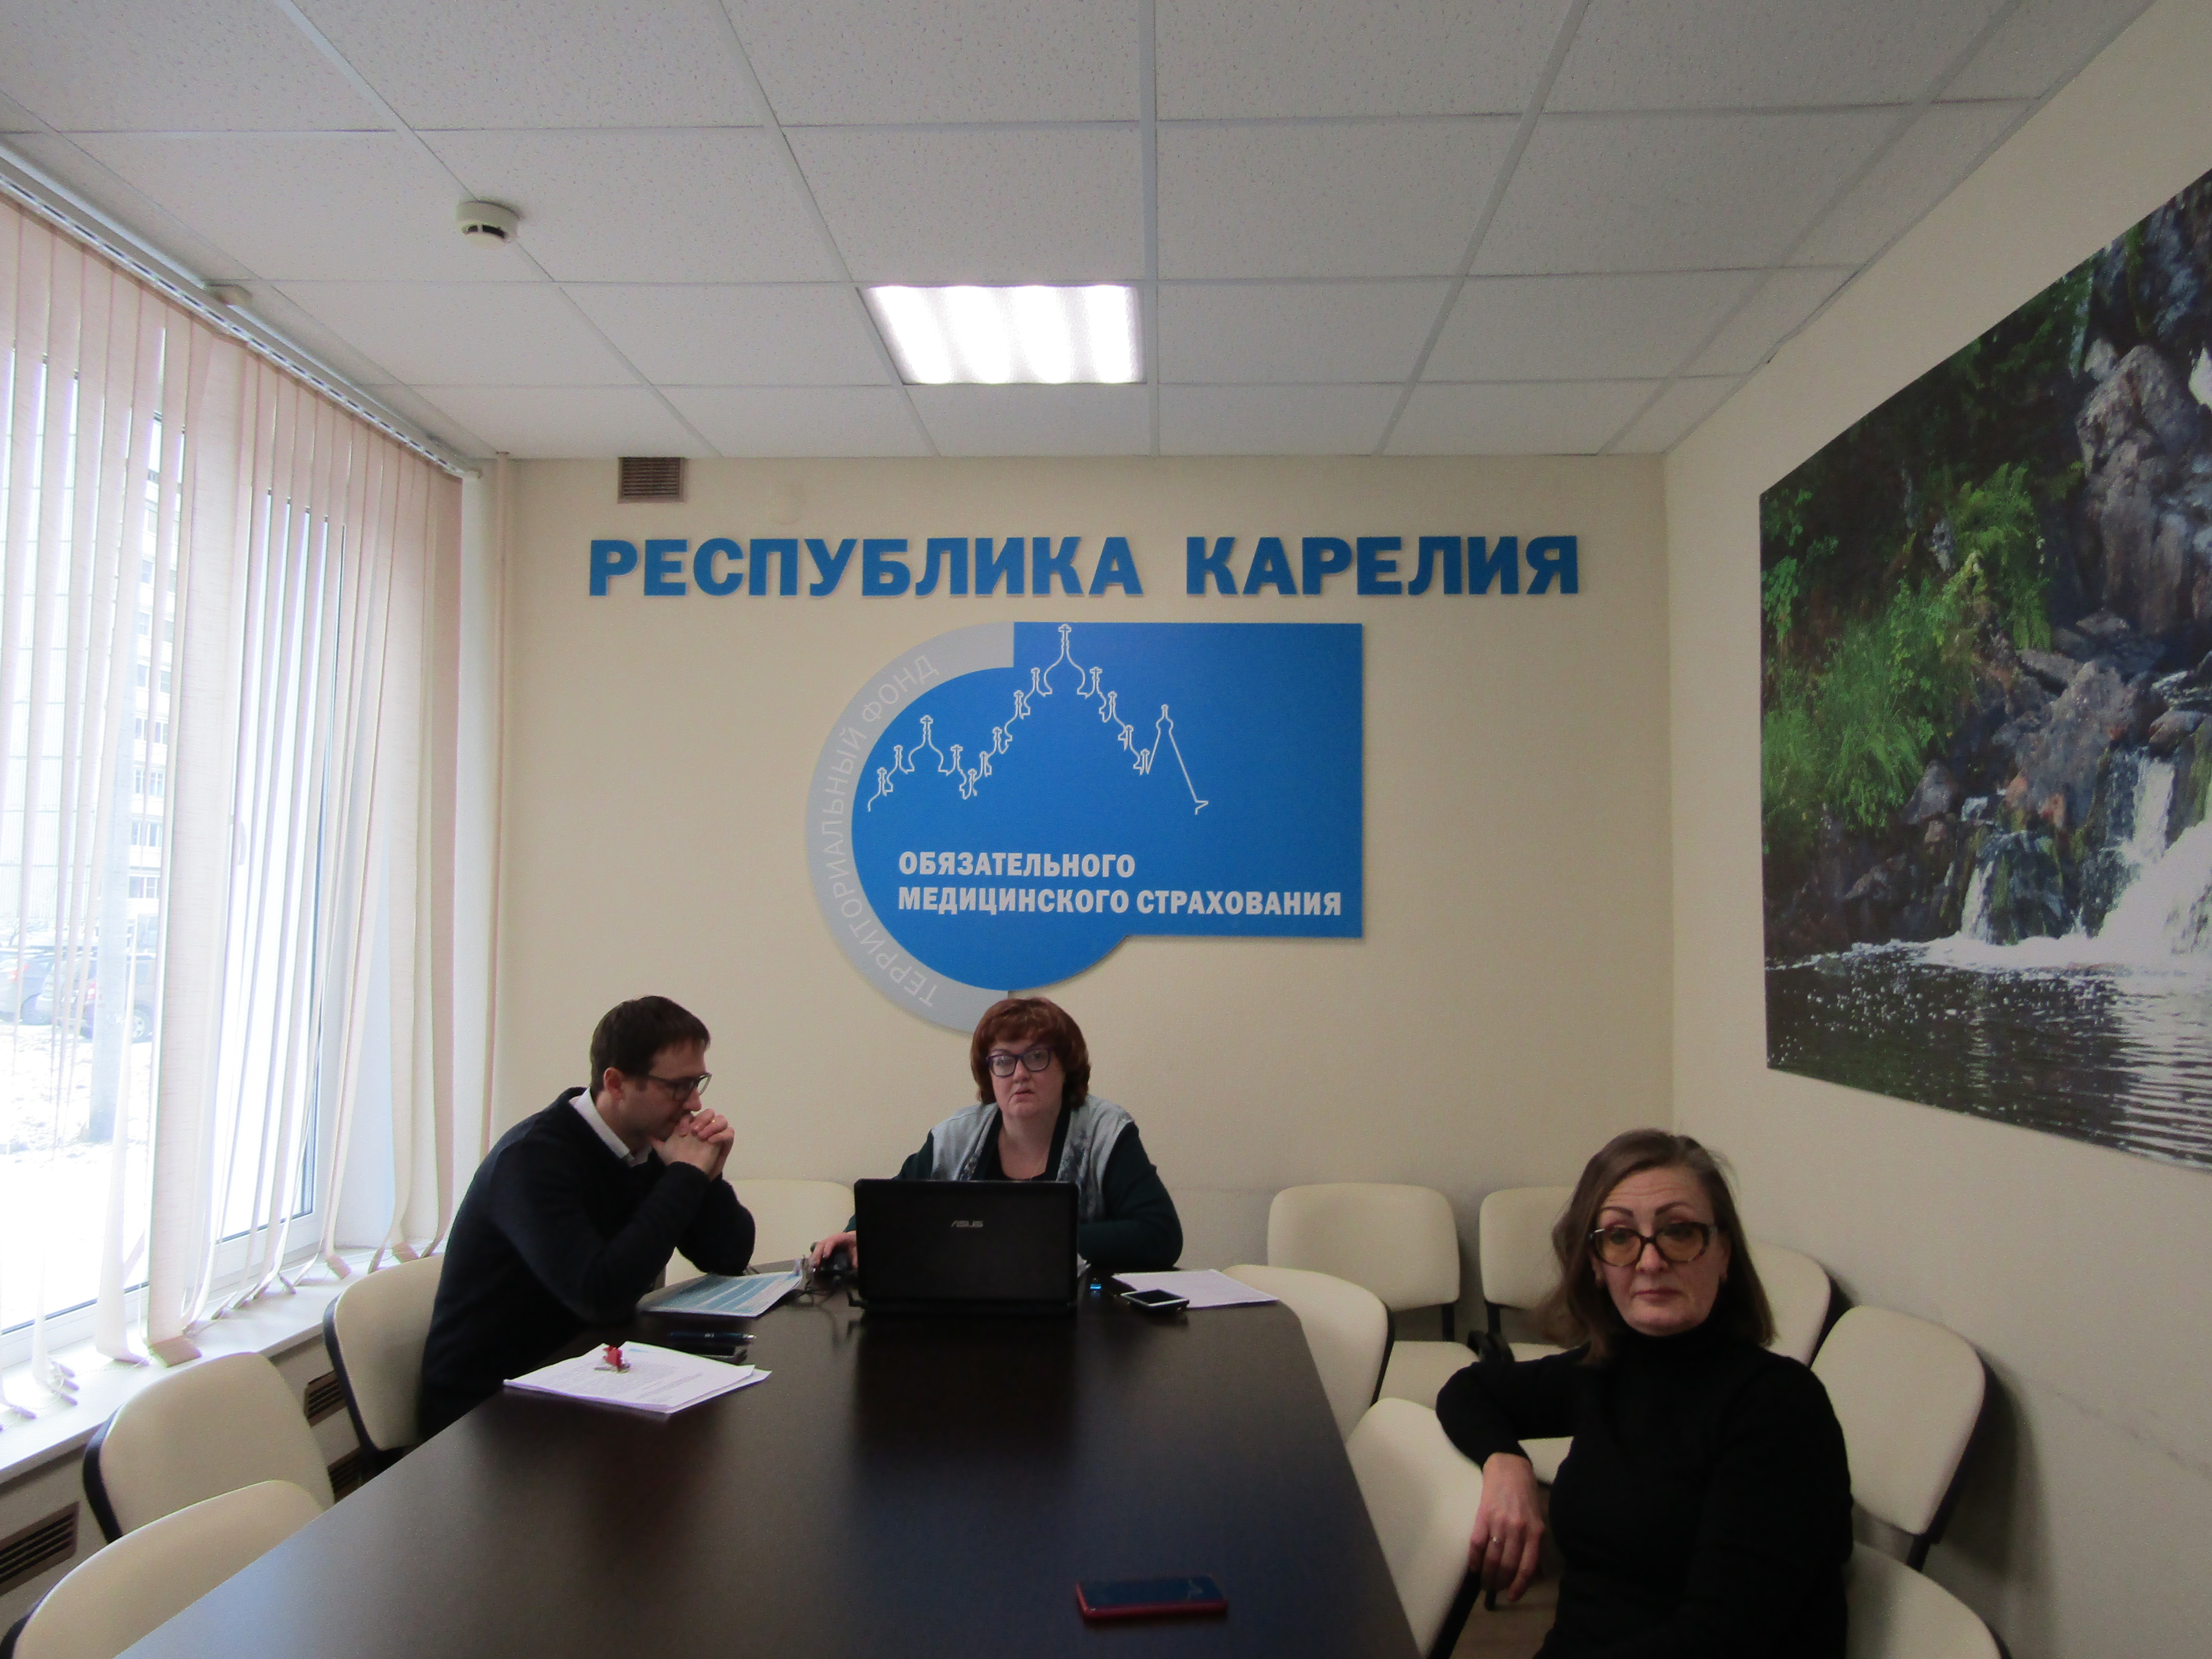 20 и 23 марта 2020 года продолжилось проведение семинар-совещаний ТФОМС РК и медицинских организаций Республики Карелия по вопросам обязательного медицинского страхования в режиме видеоконференций.